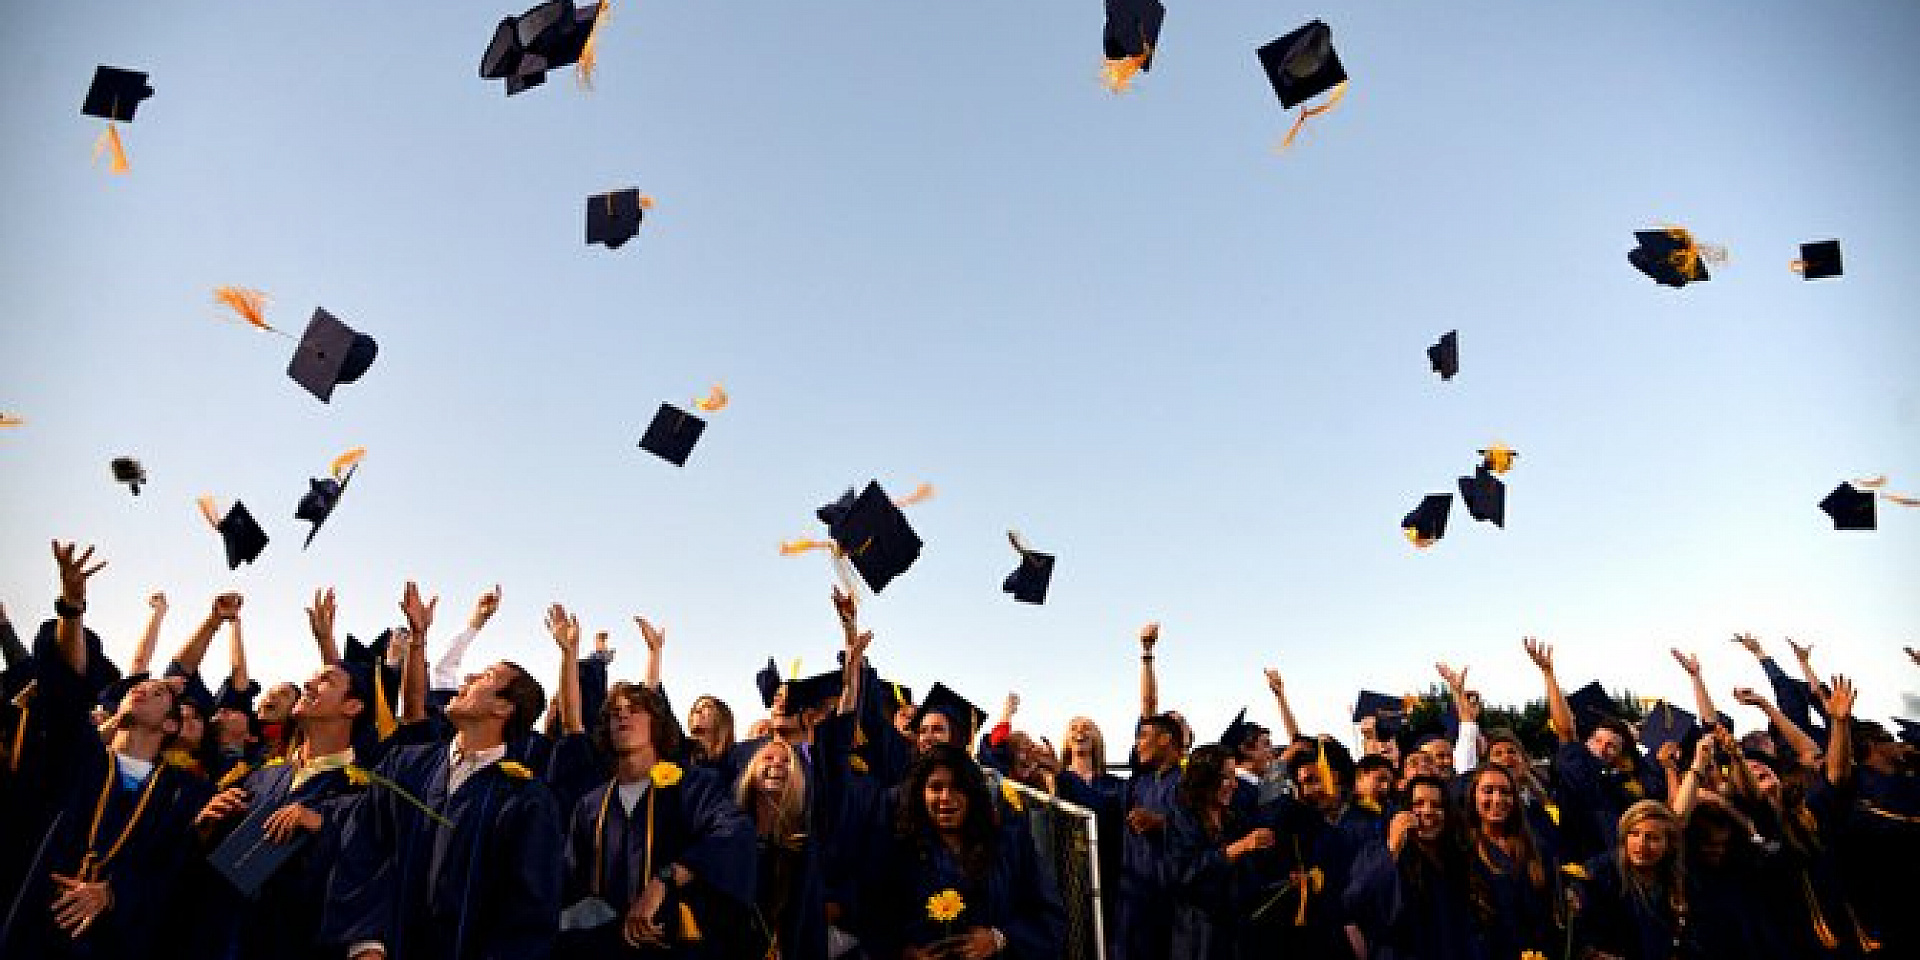 Des gradués lancent leur chapeau de graduation dans les airs